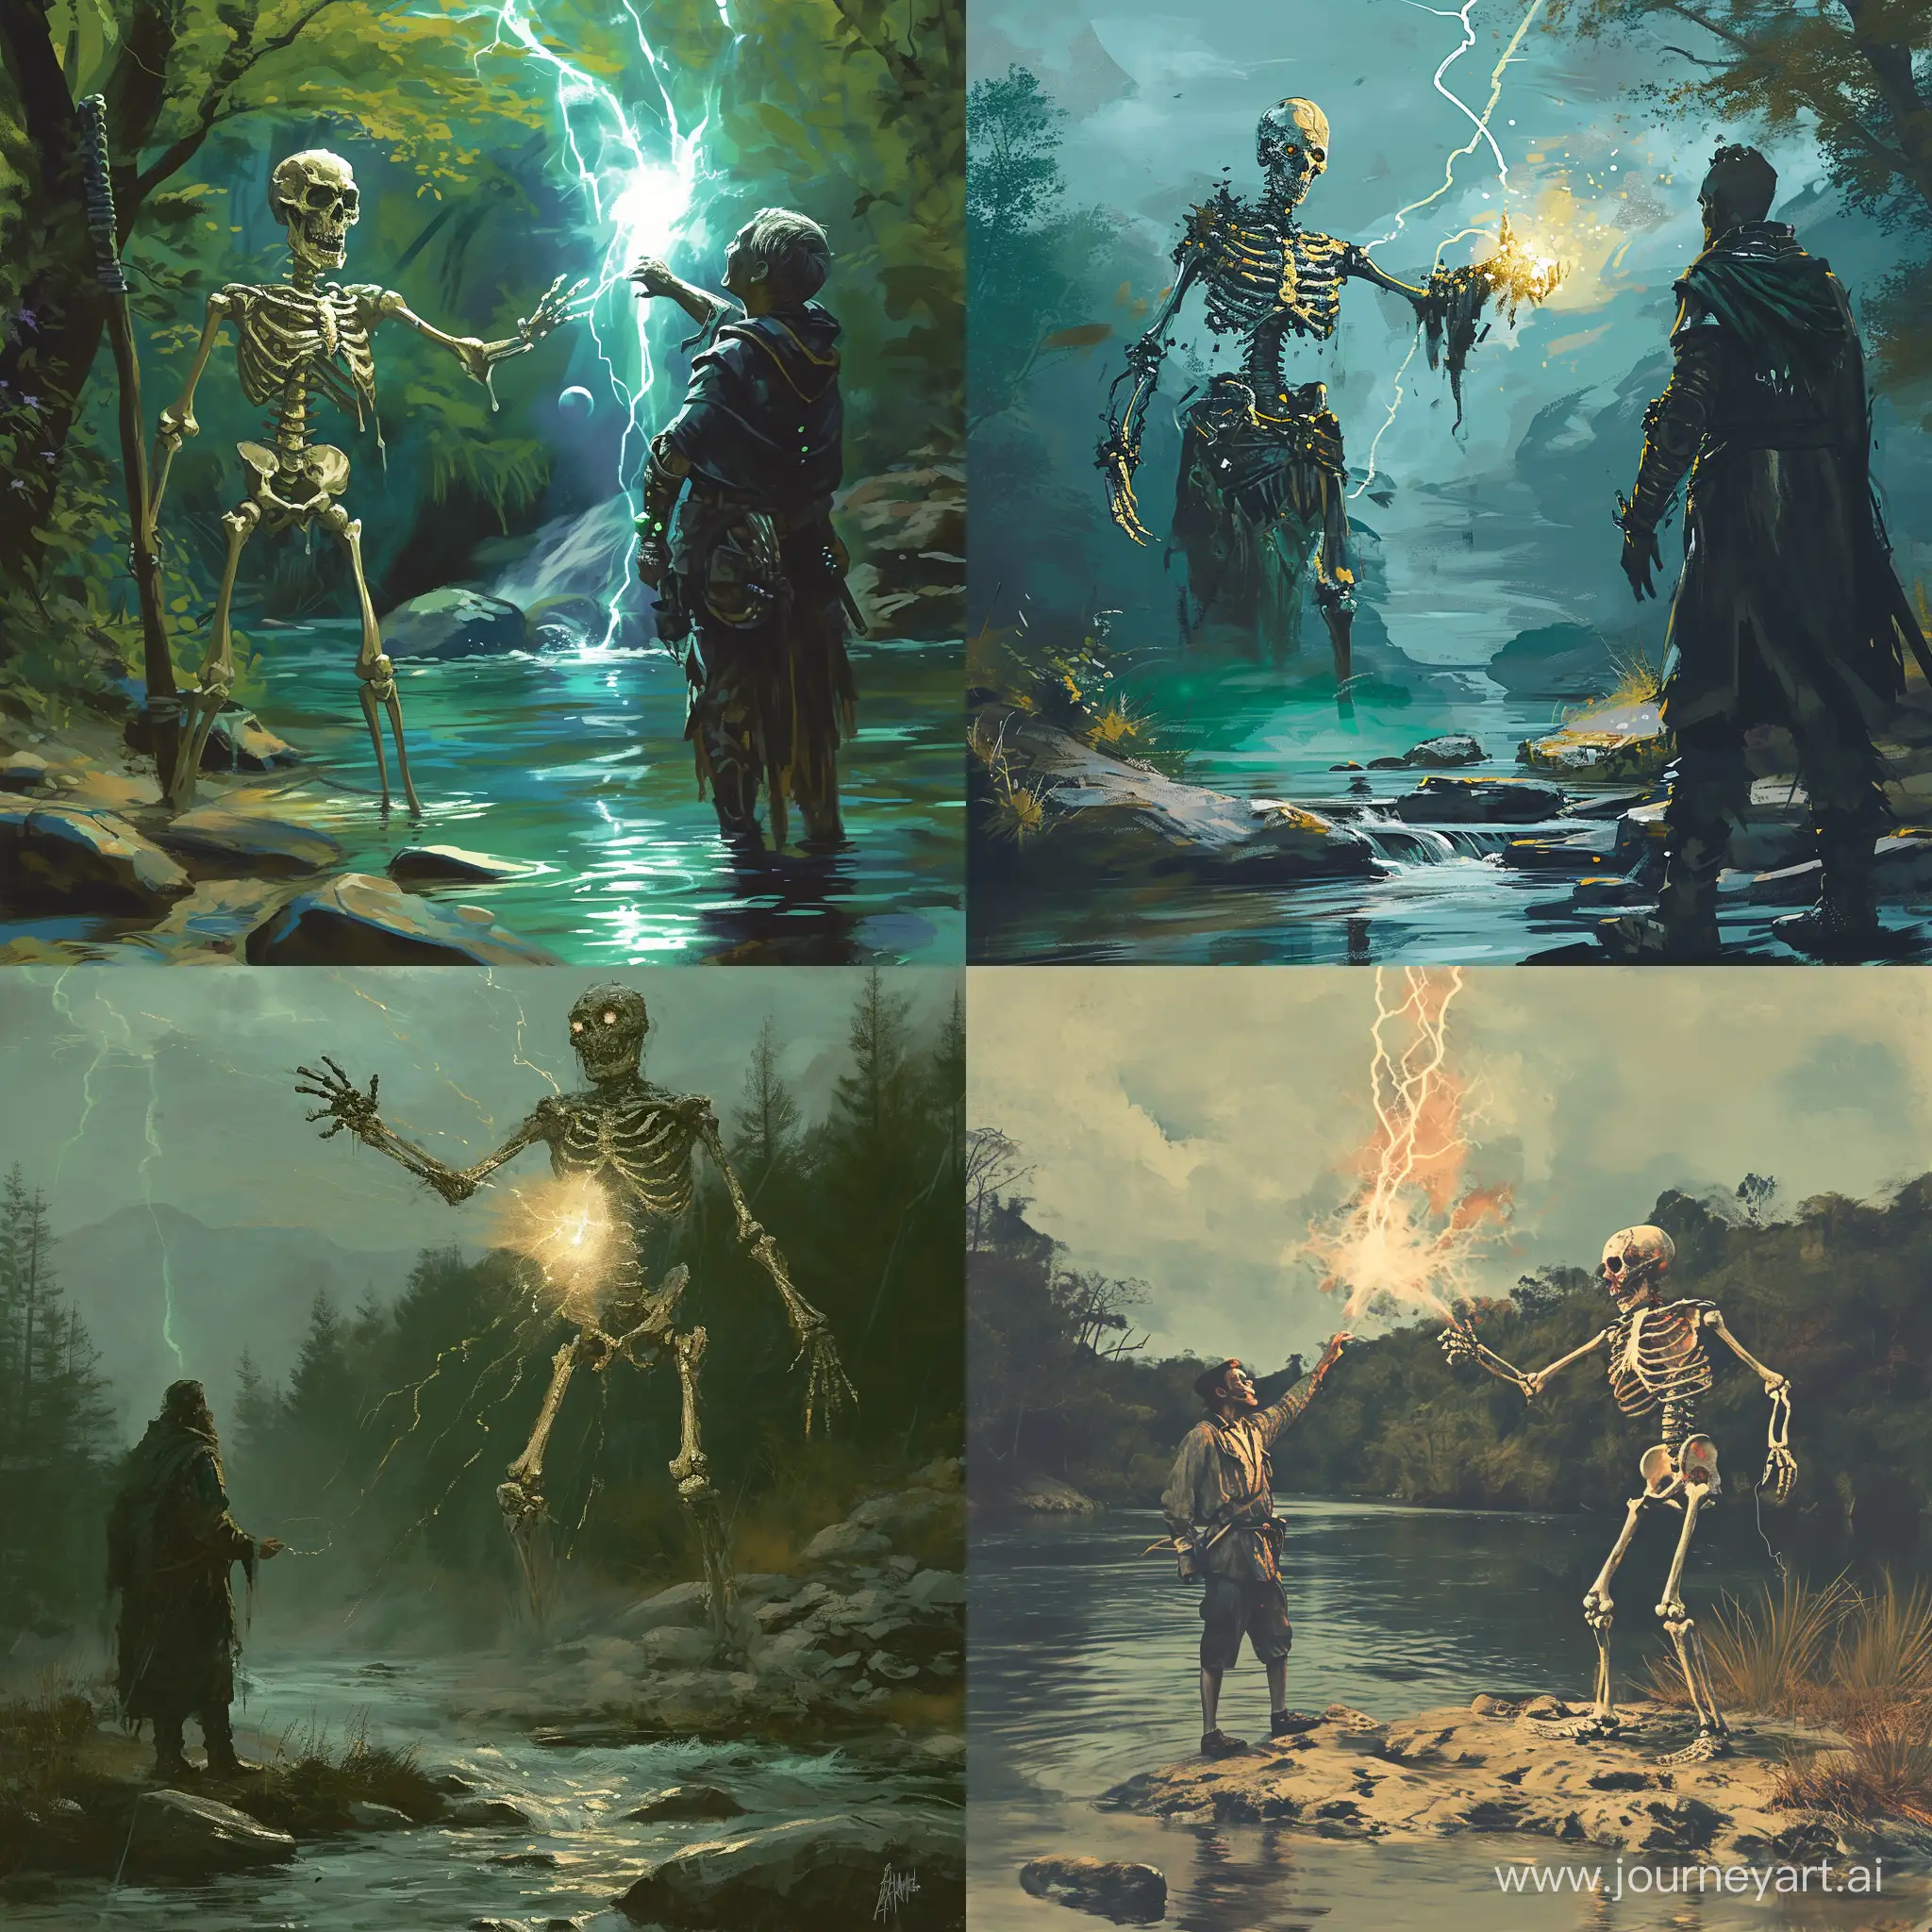 Magical-Skeleton-Warrior-Casting-Spell-across-River